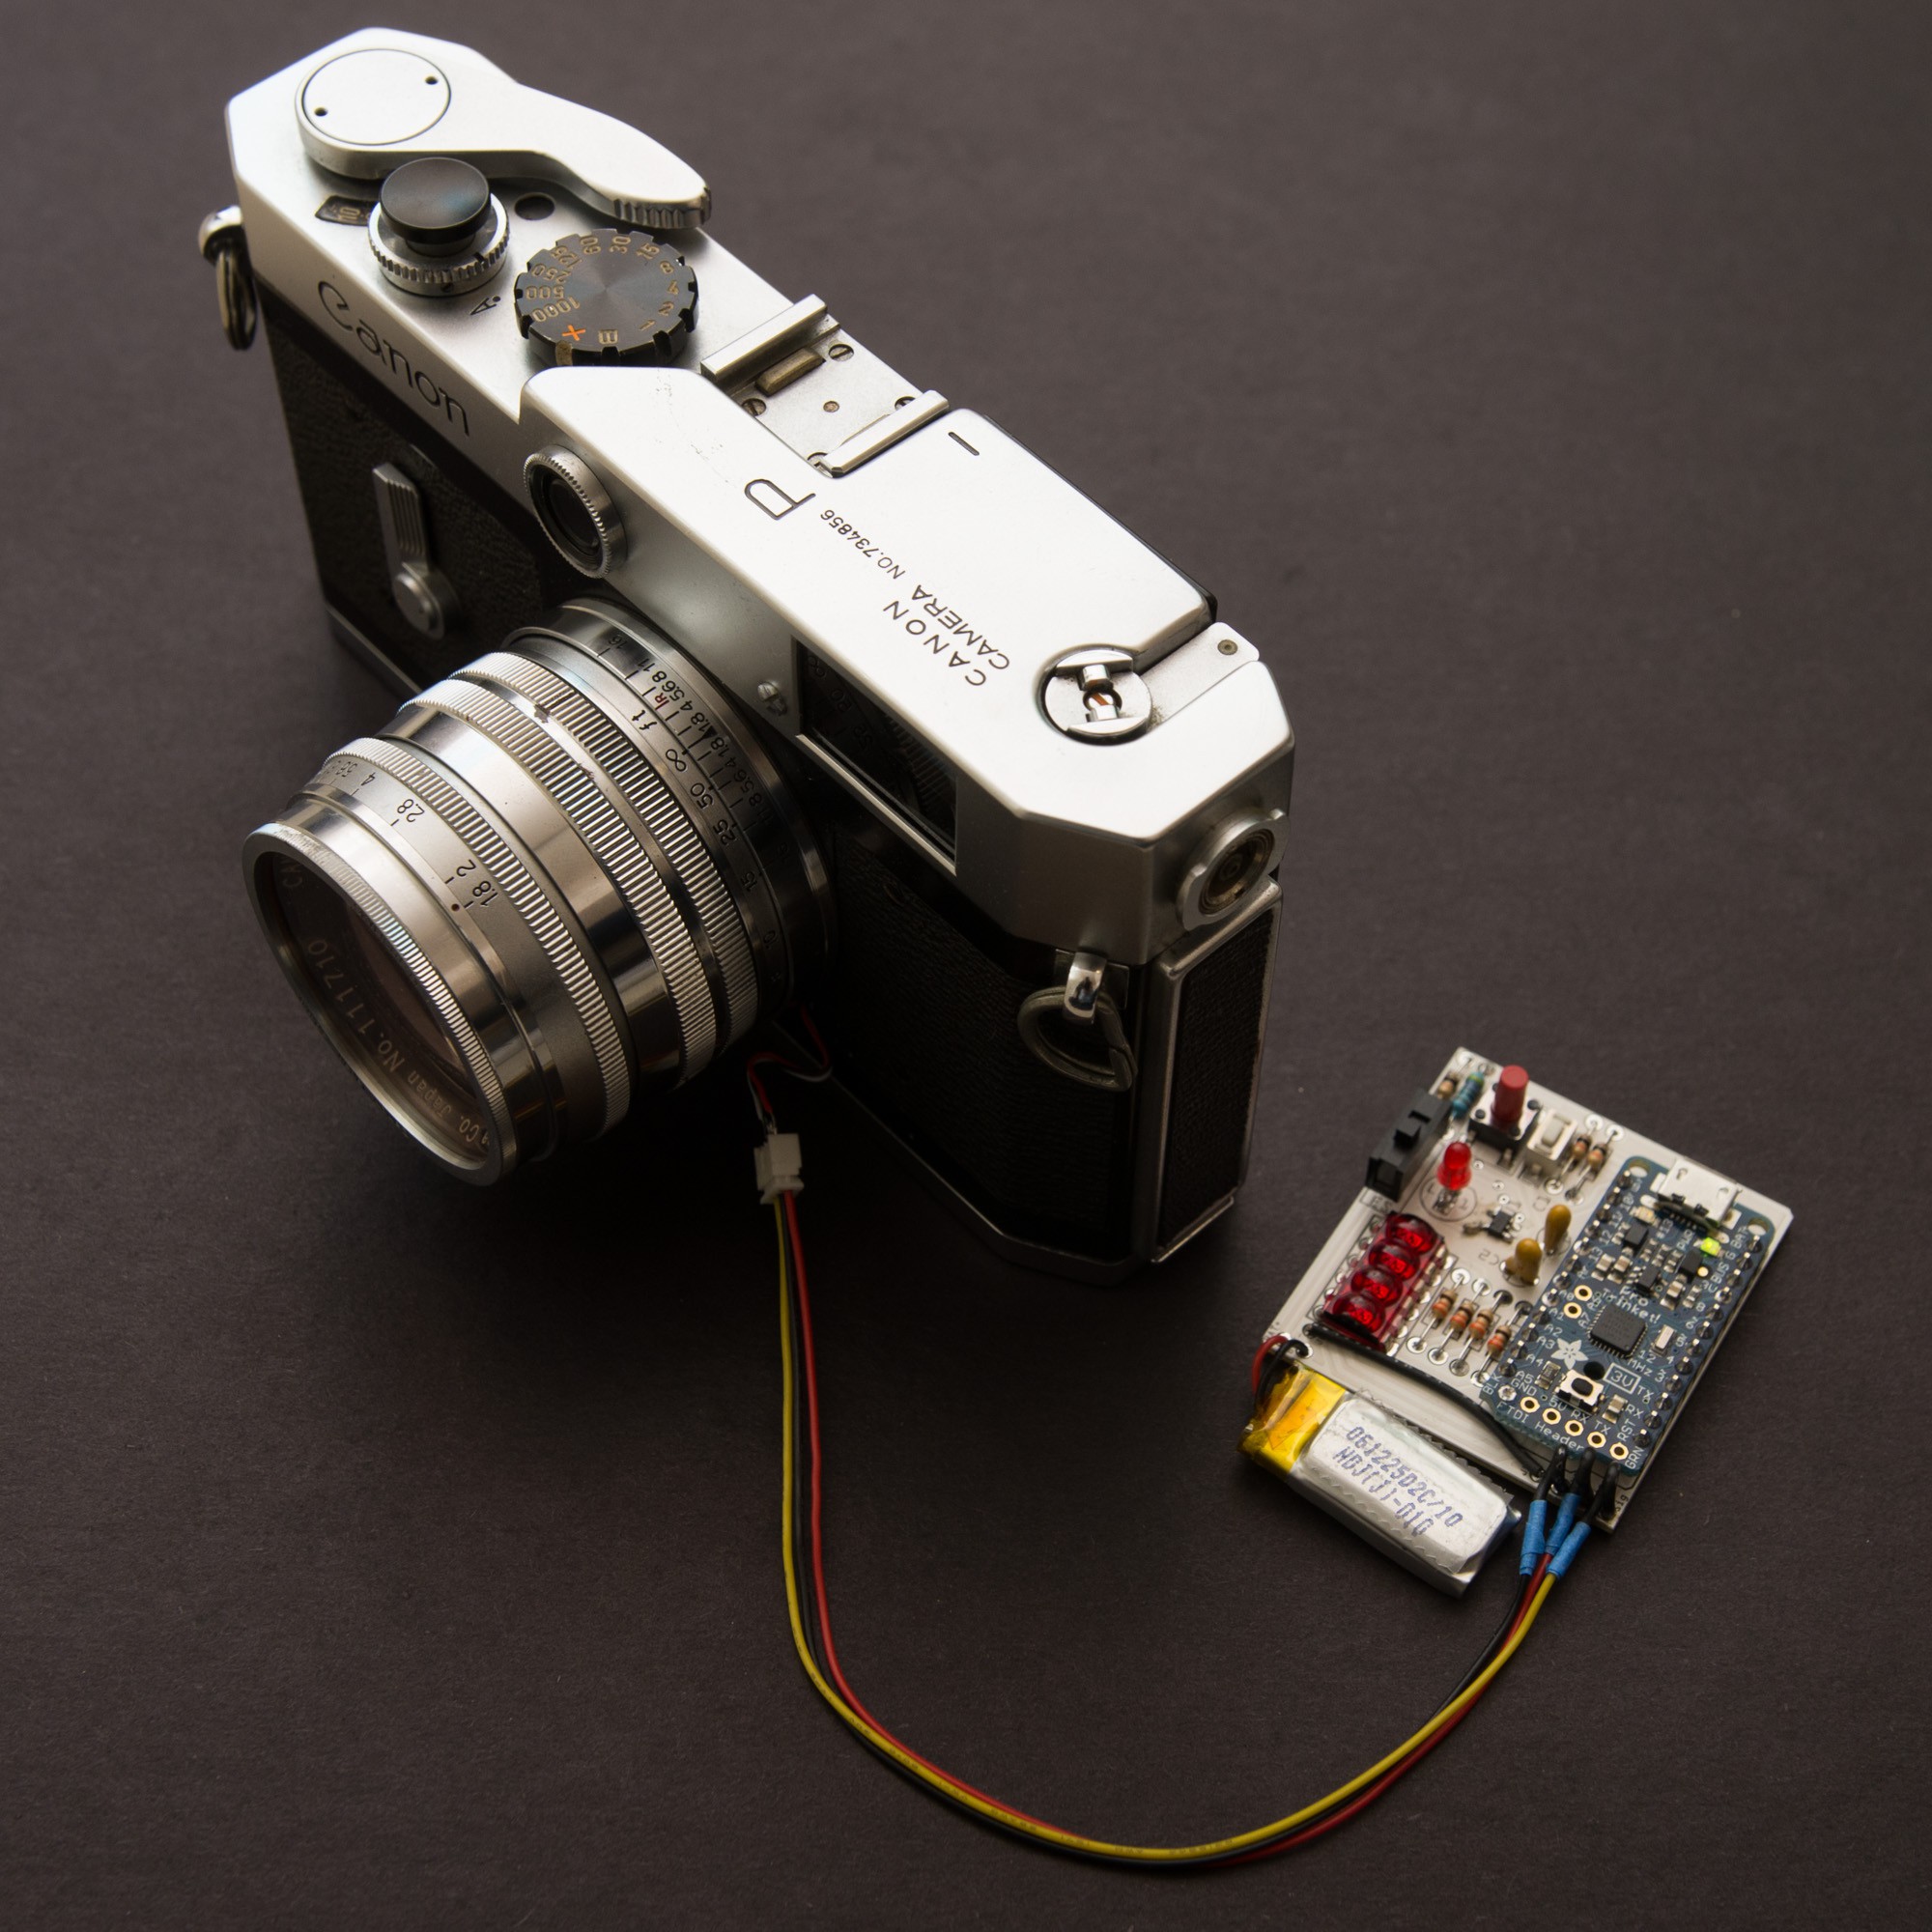 TTL exposure meter the Canon P rangefinder Hackaday.io